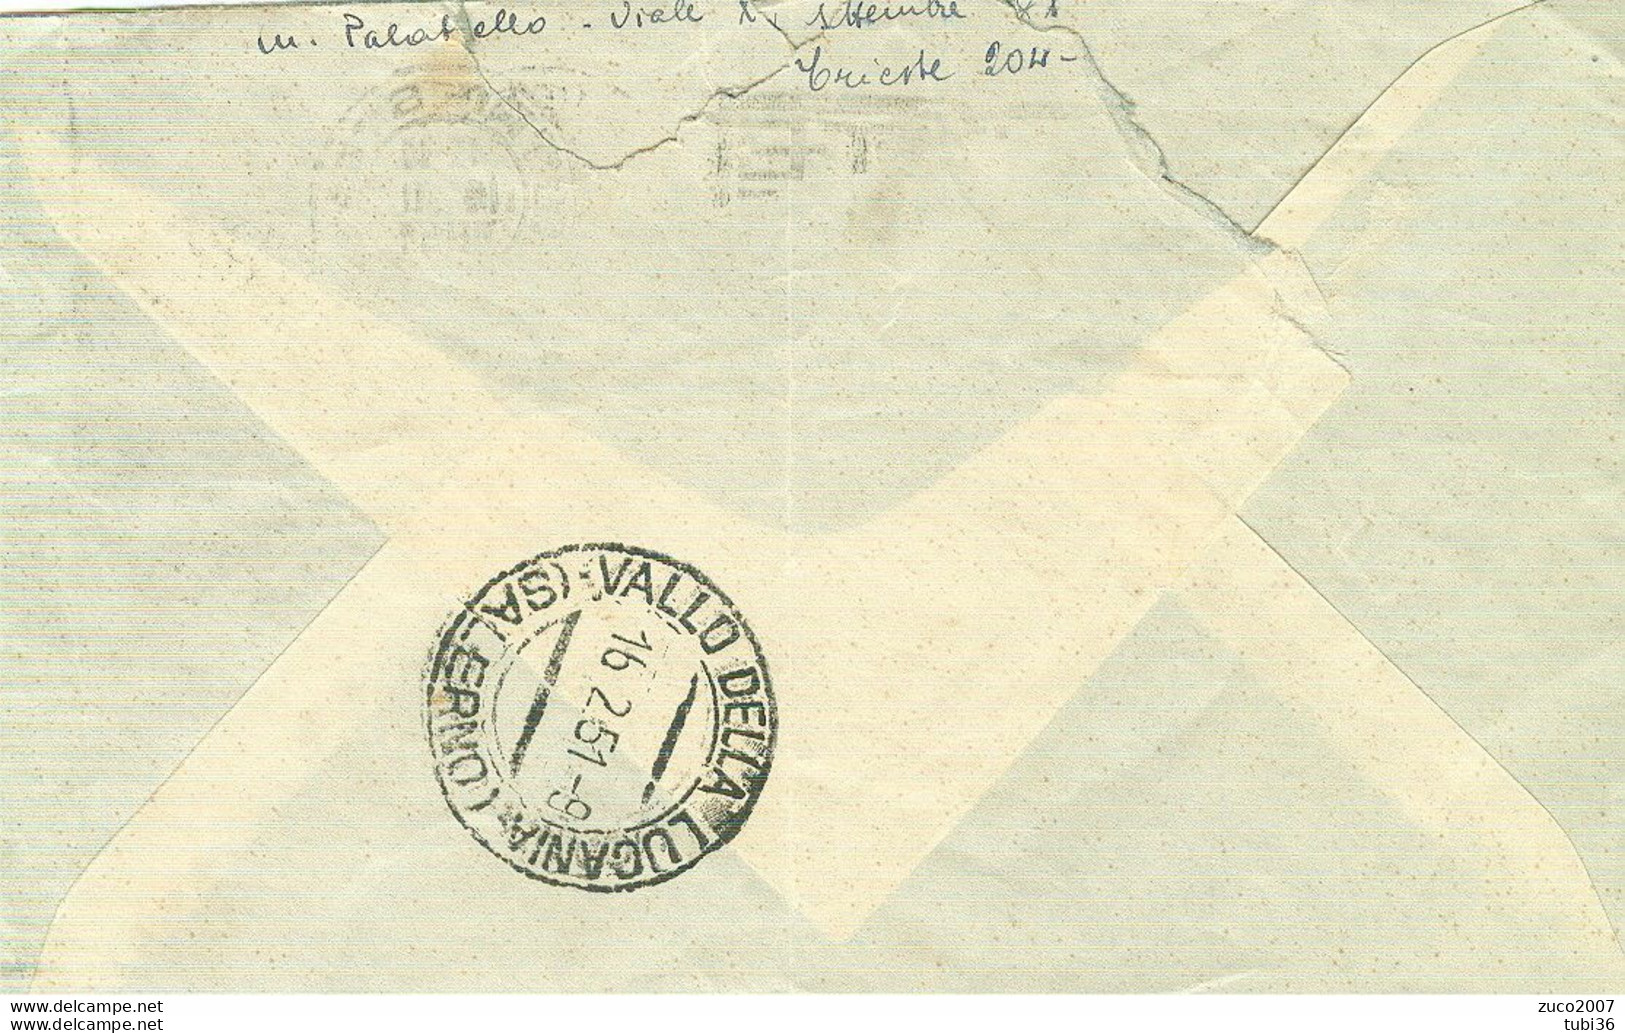 DEMOCRATICA £.20 AMG-FTT.-1951-TIMBRO POSTE TRIESTE TARGHETTA"DONATE SANGUE ALLA BANCA",VALLE DELLA LUCANIA (SALERNO) - Marcofilie